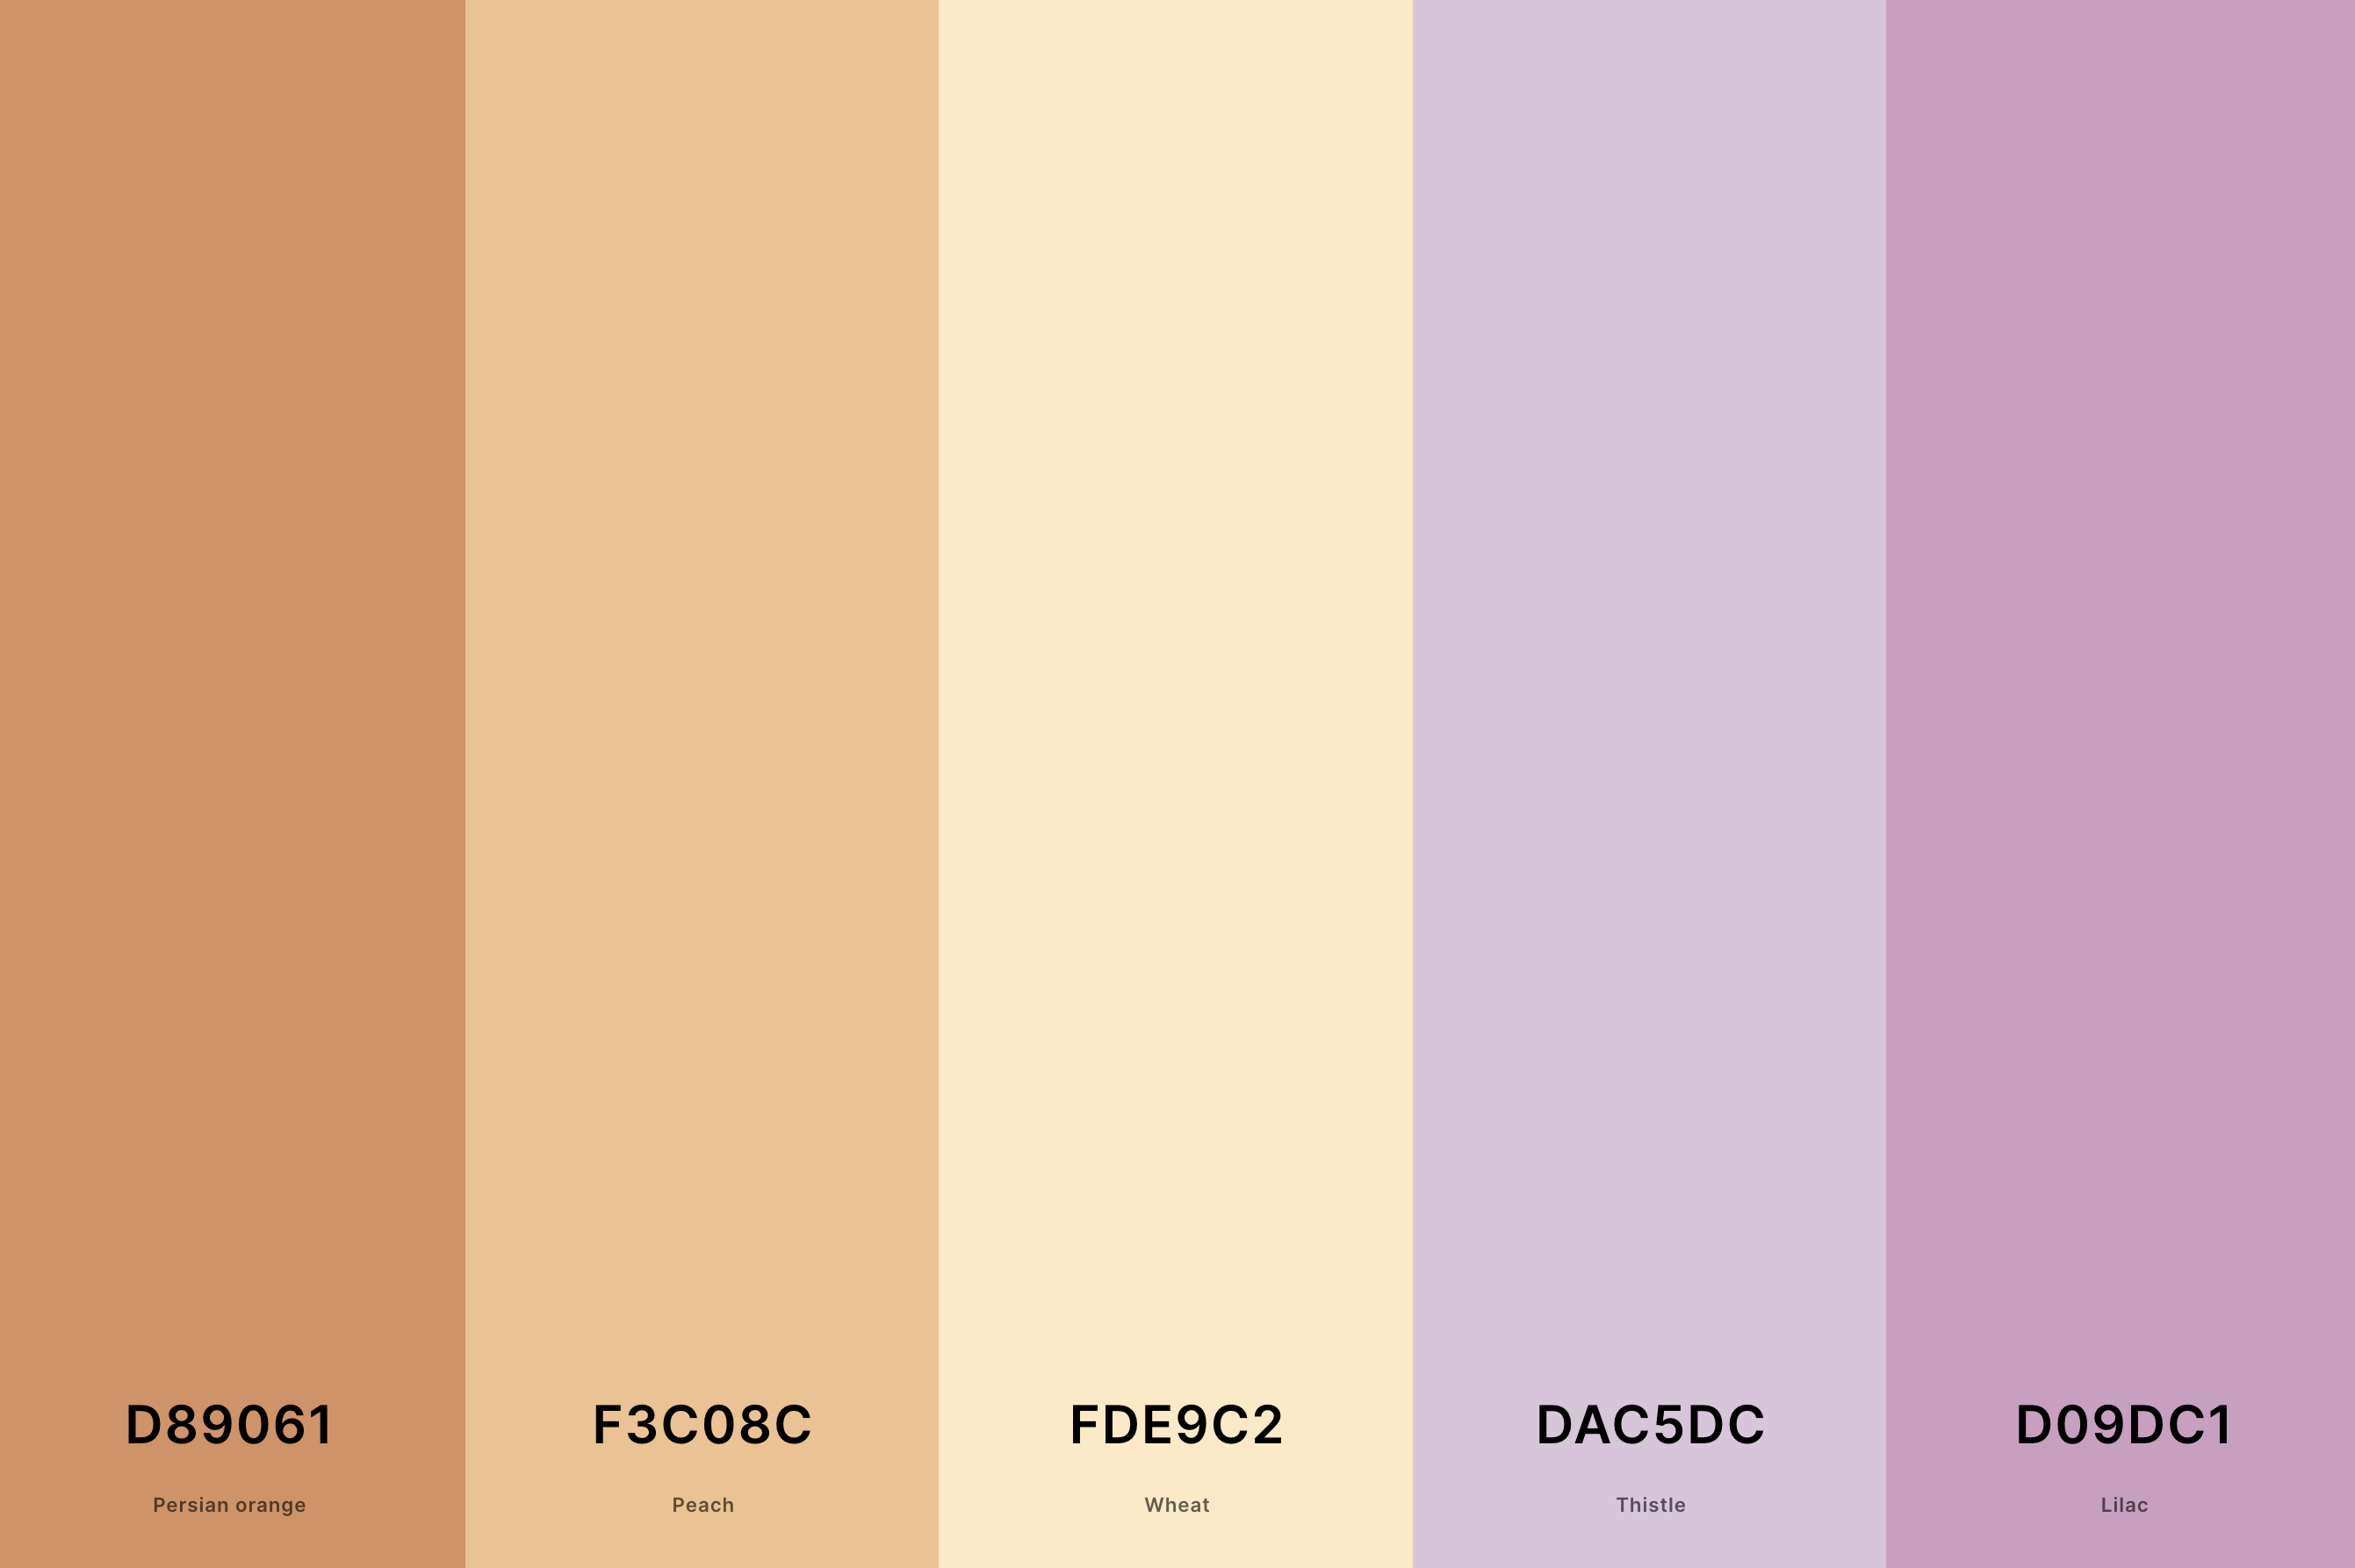 20. Lavender And Peach Color Palette Color Palette with Persian Orange (Hex #D89061) + Peach (Hex #F3C08C) + Wheat (Hex #FDE9C2) + Thistle (Hex #DAC5DC) + Lilac (Hex #D09DC1) Color Palette with Hex Codes